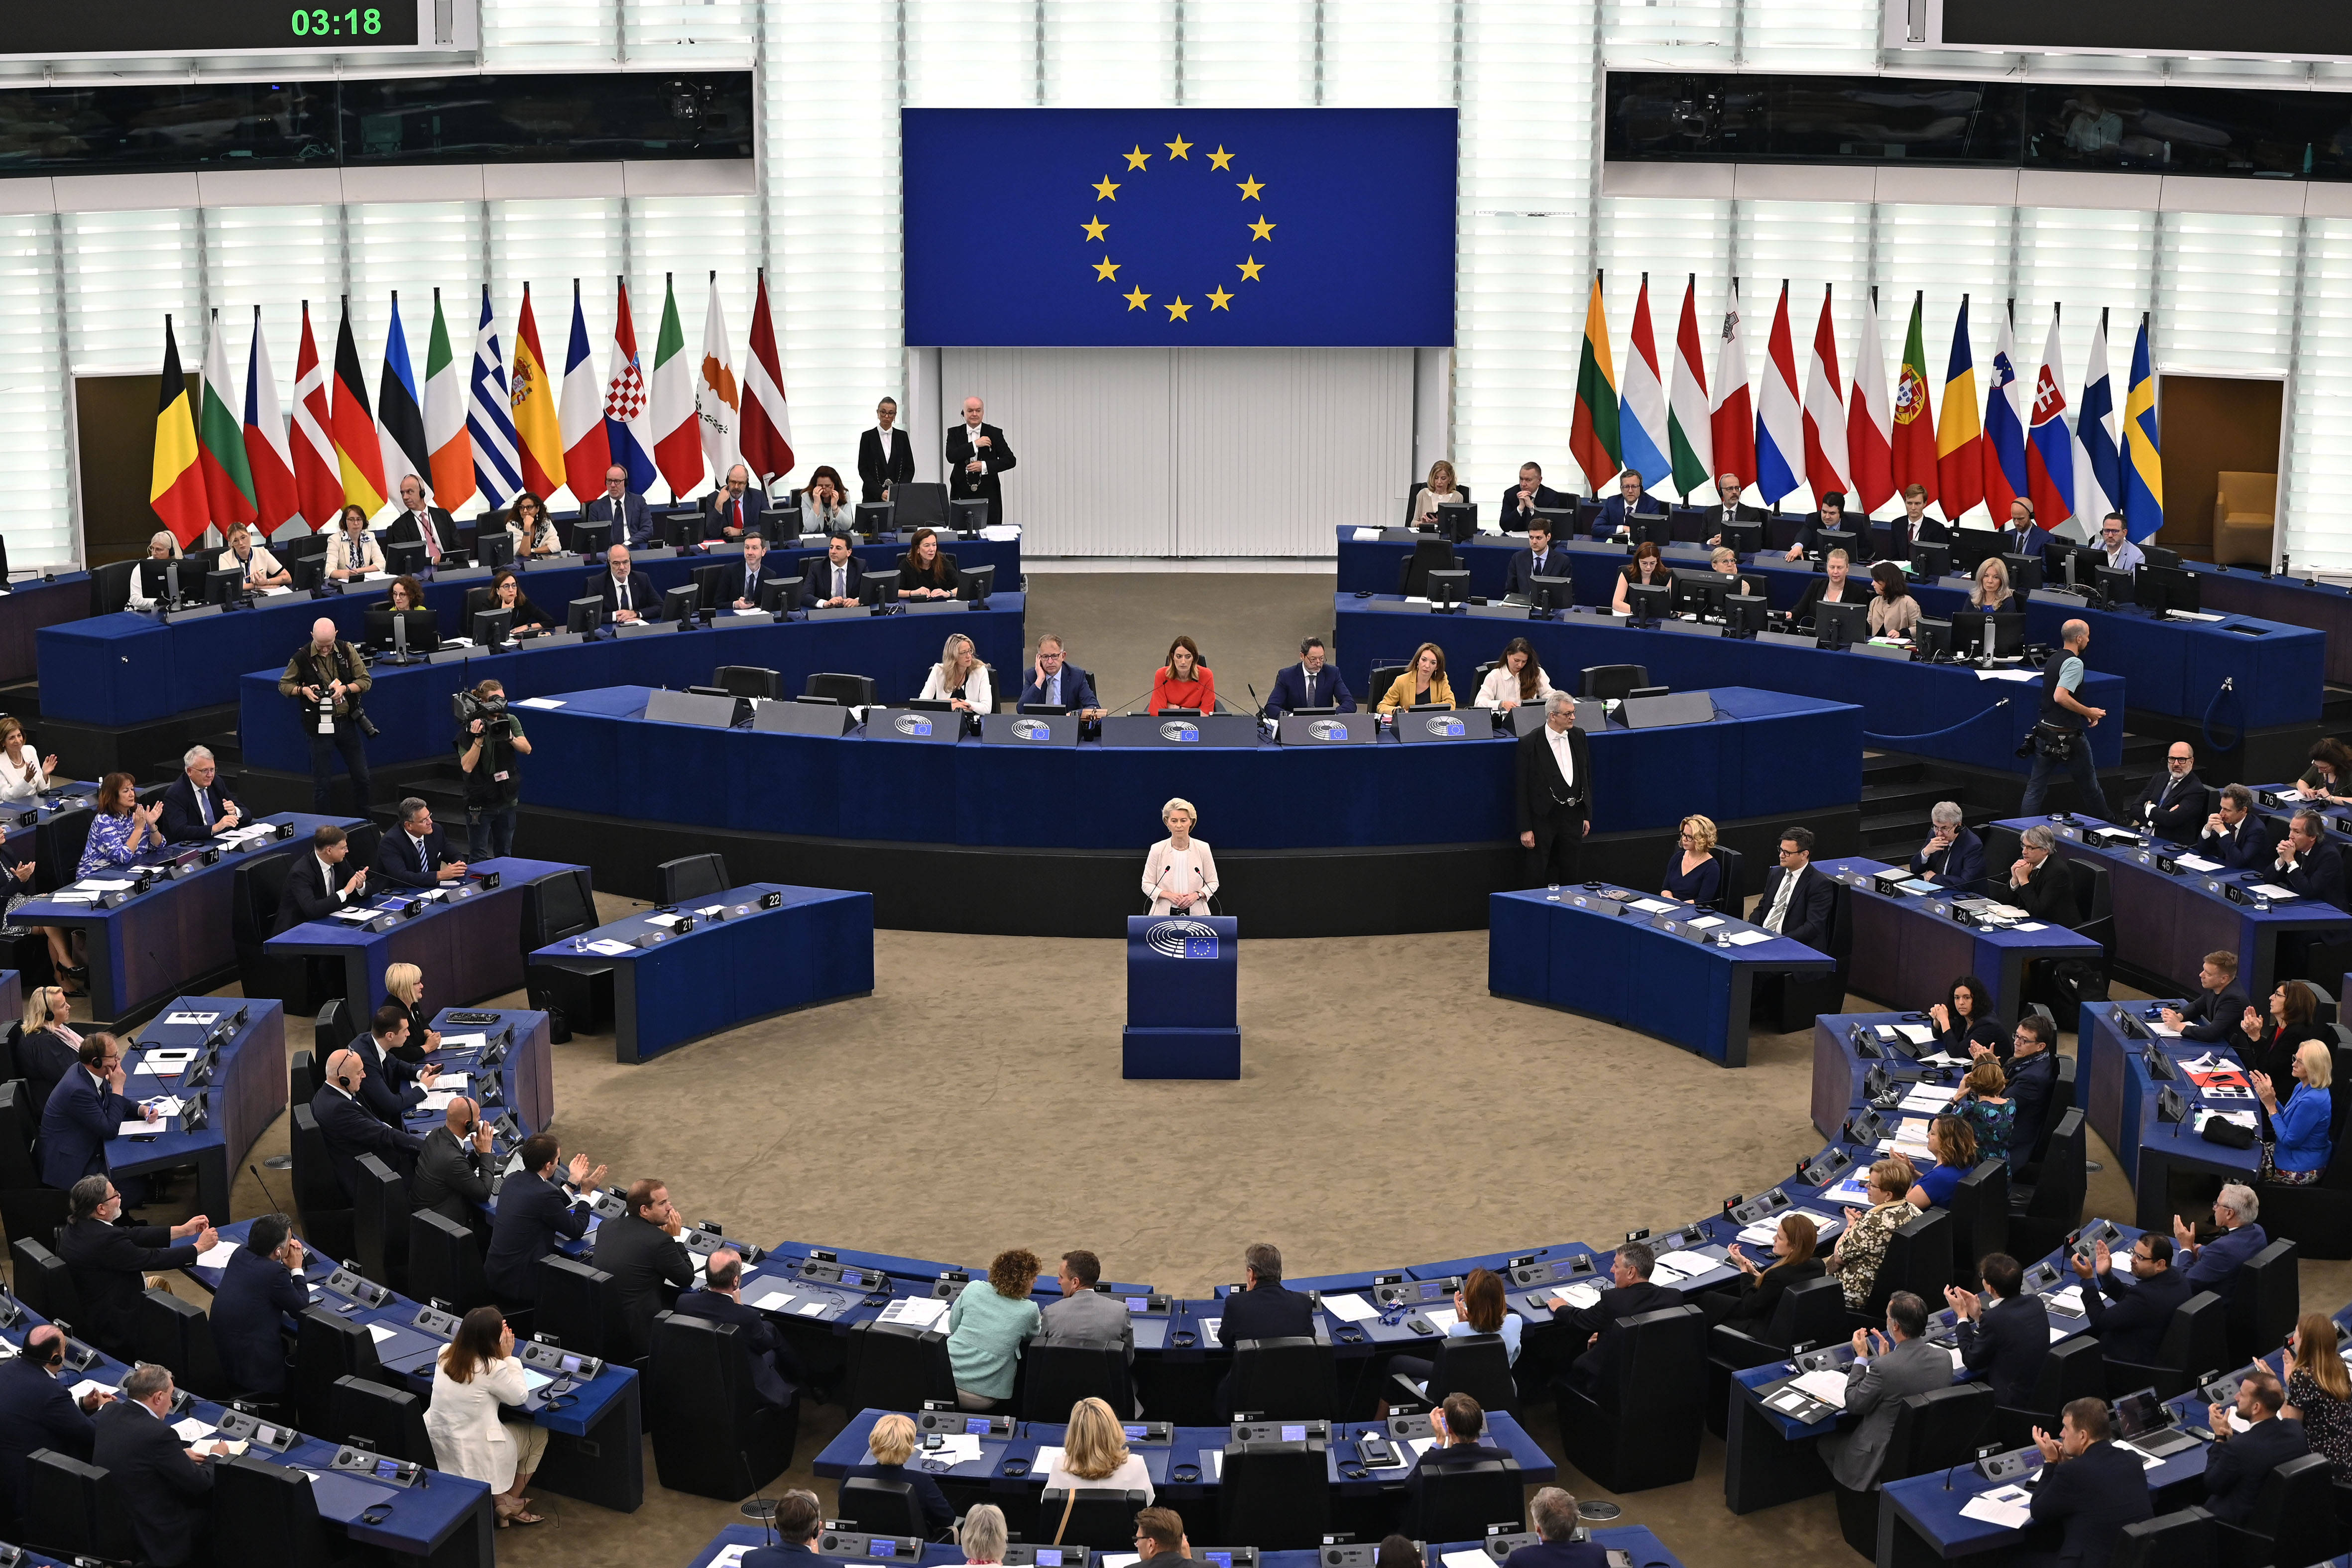 Ursula von der Leyen bleibt weitere fünf Jahre EU-Kommissionspräsidentin. Die Besetzung ihres Kabinetts ist noch unklar.